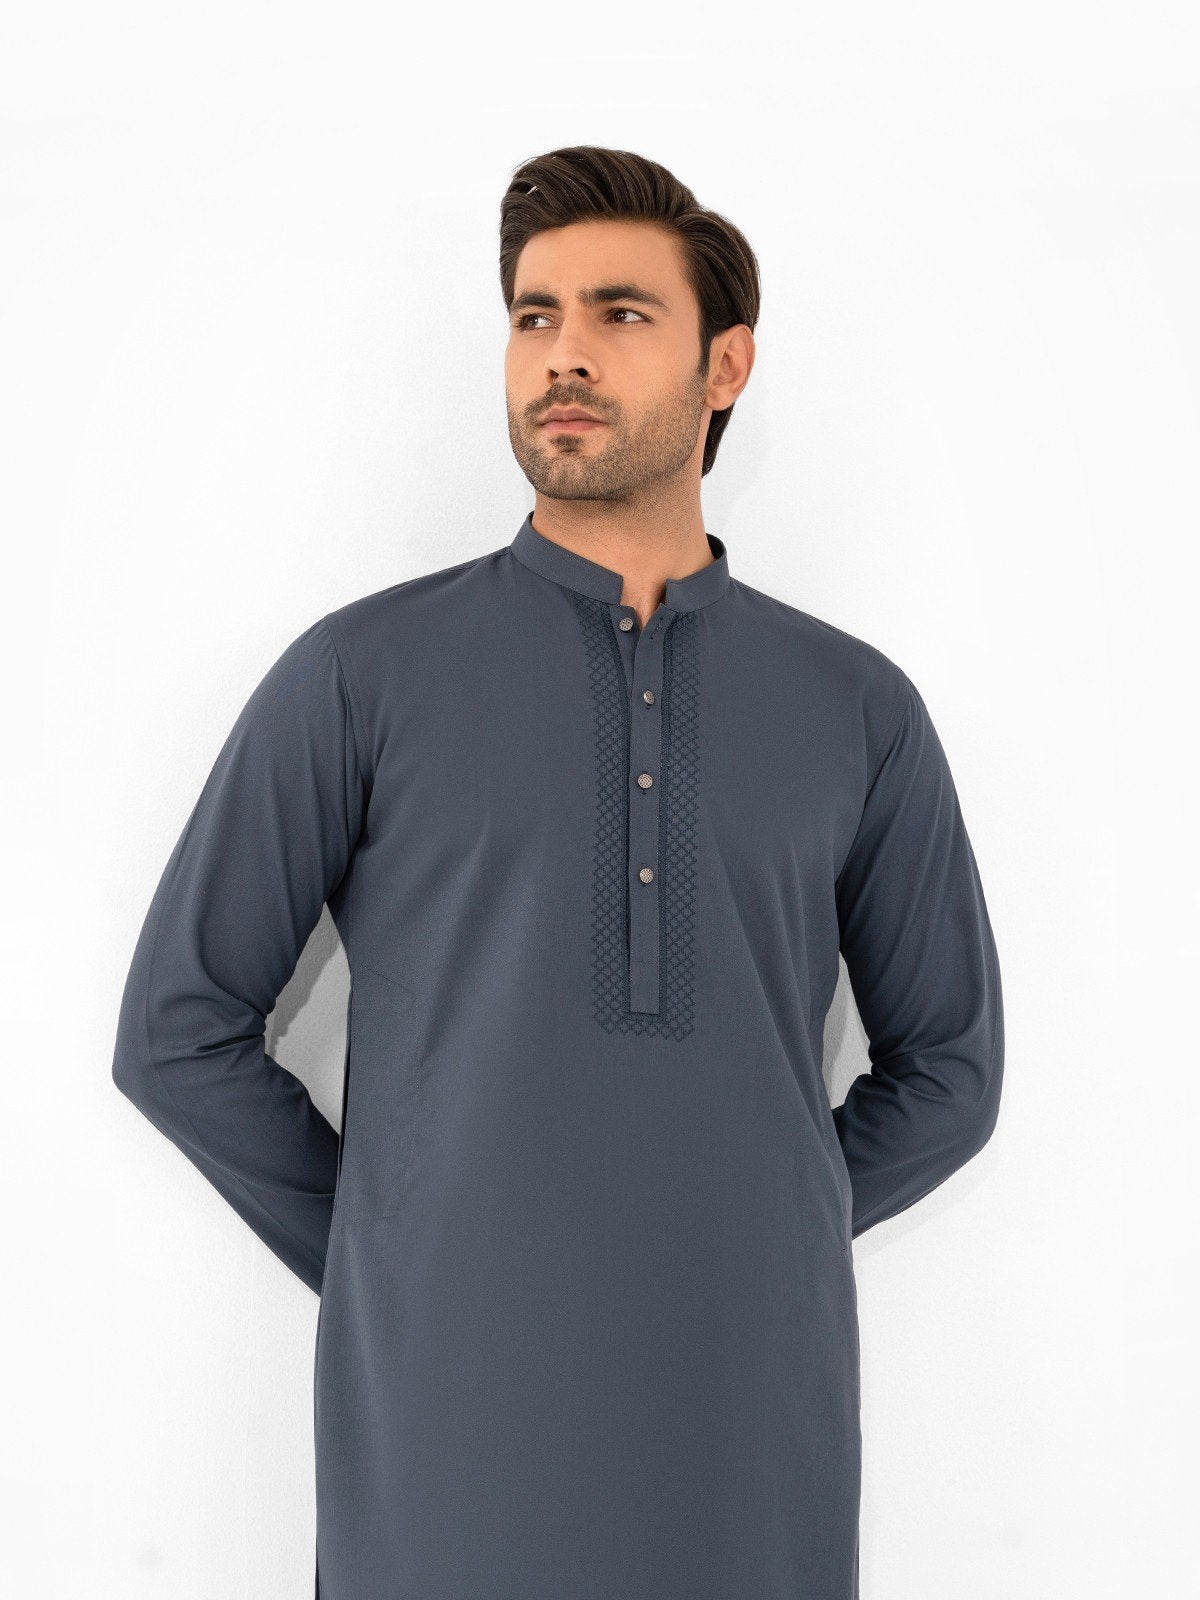 Trousers for Men Online  WINGS Super Grey Trouser for Men in Pakistan